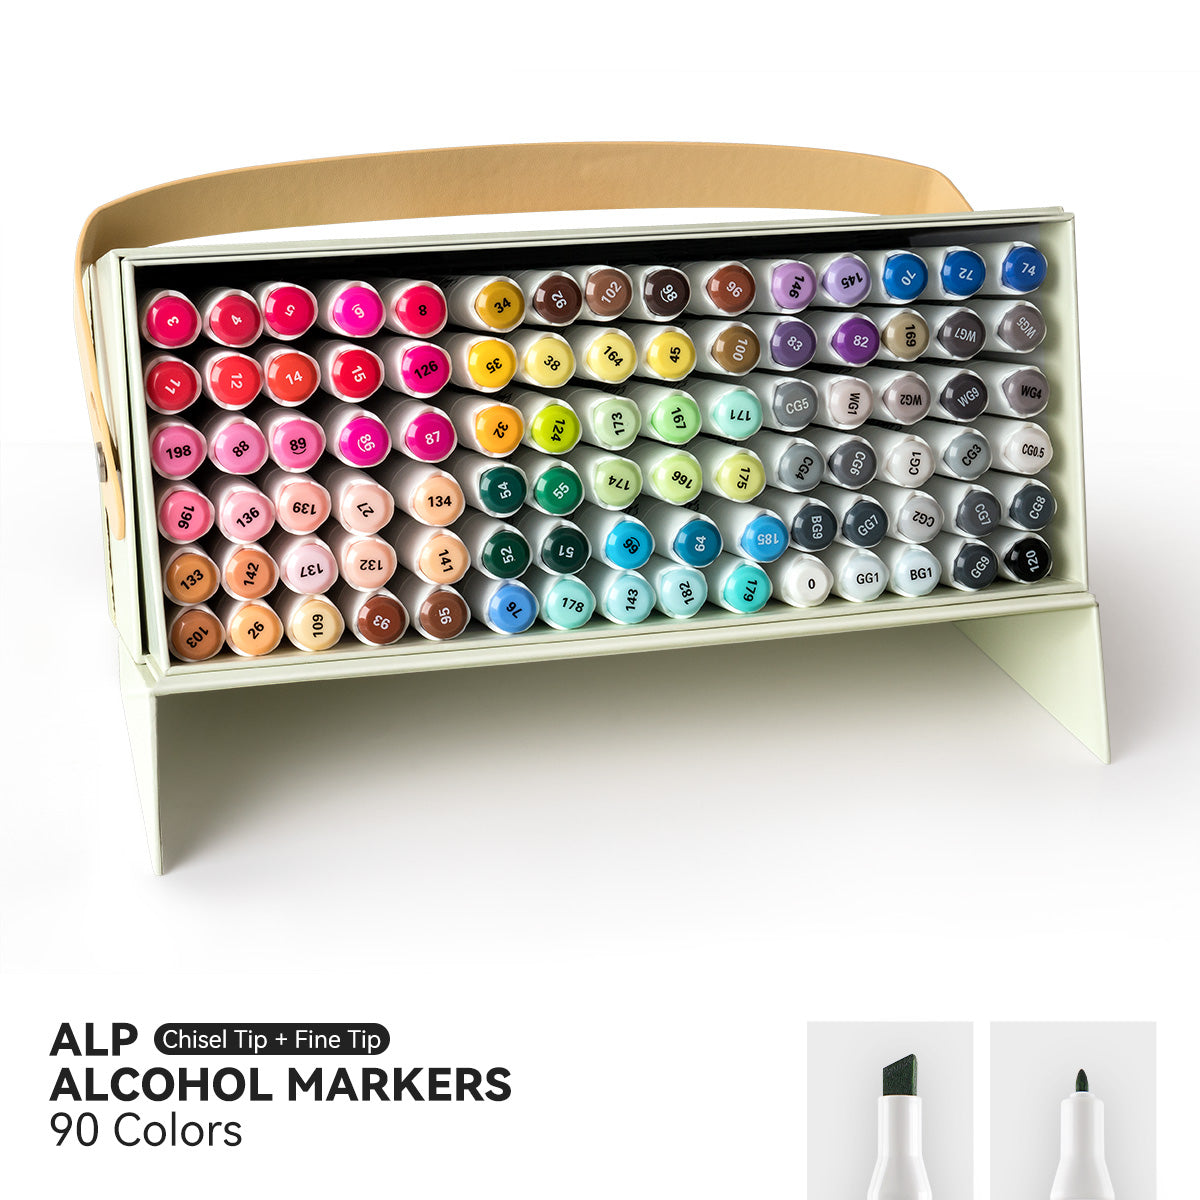 Arrtx ALP 90 Colors Alcohol Markers